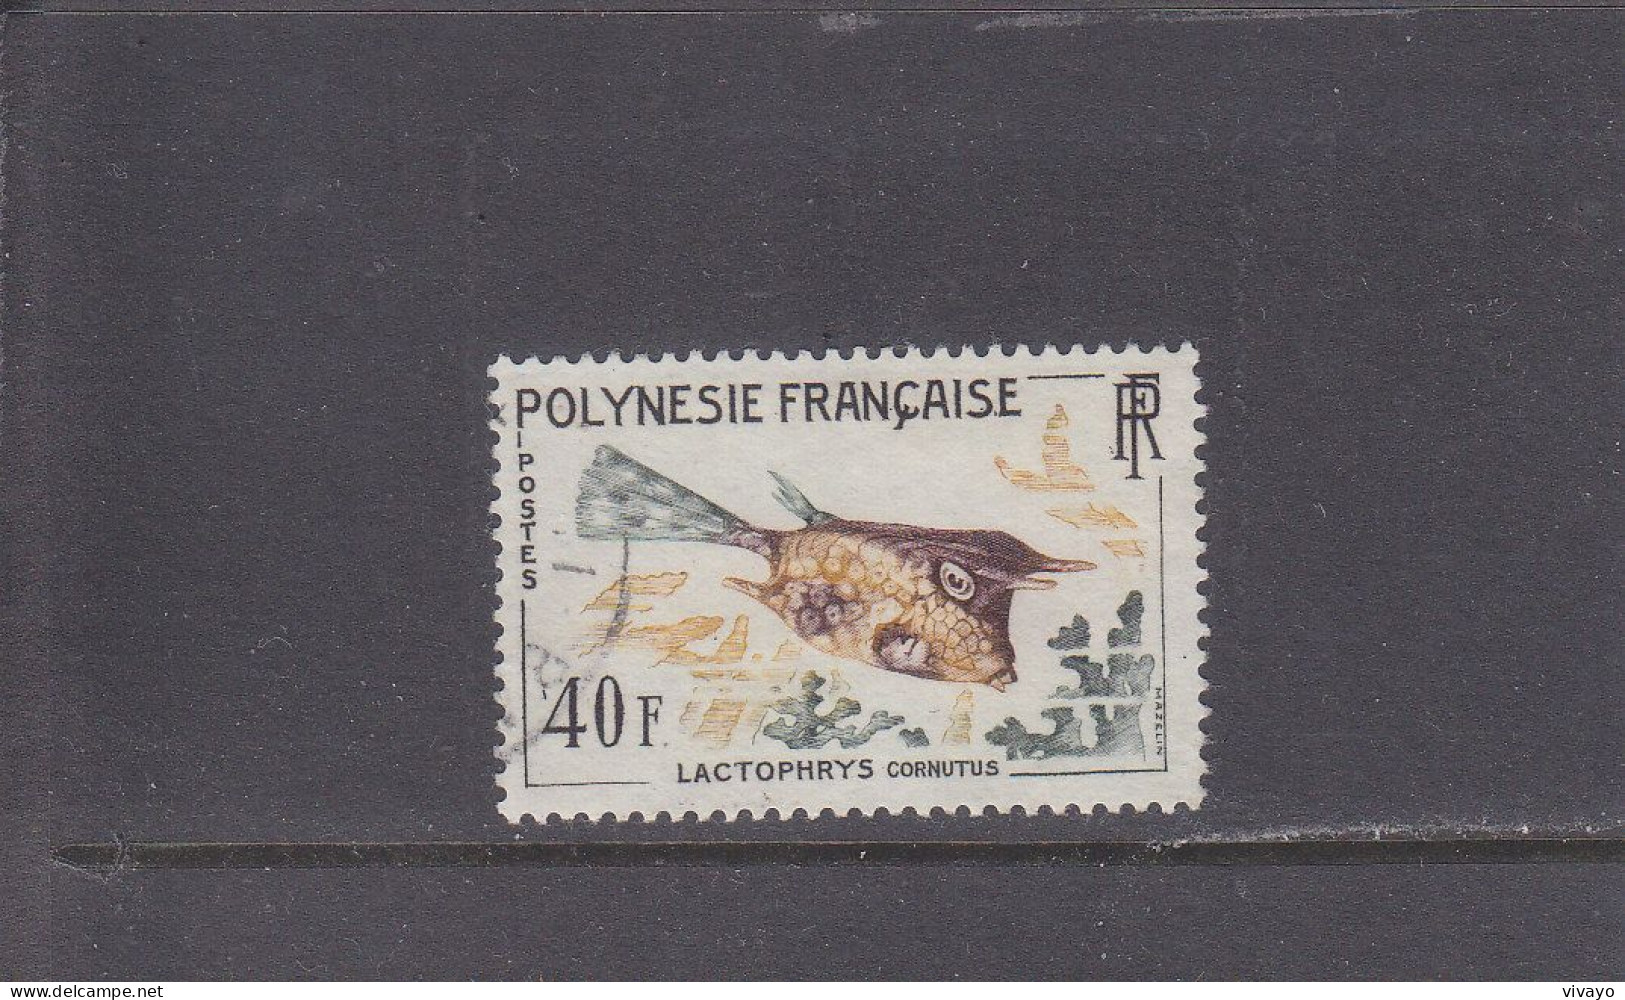 FRENCH POLYNESIA - POLYNESIE FRAN. - O / FINE CANCELLED - 1962 - TROPICAL FISH (TOP VALUE) - Yv. 21 - Mi. 27 - Gebraucht